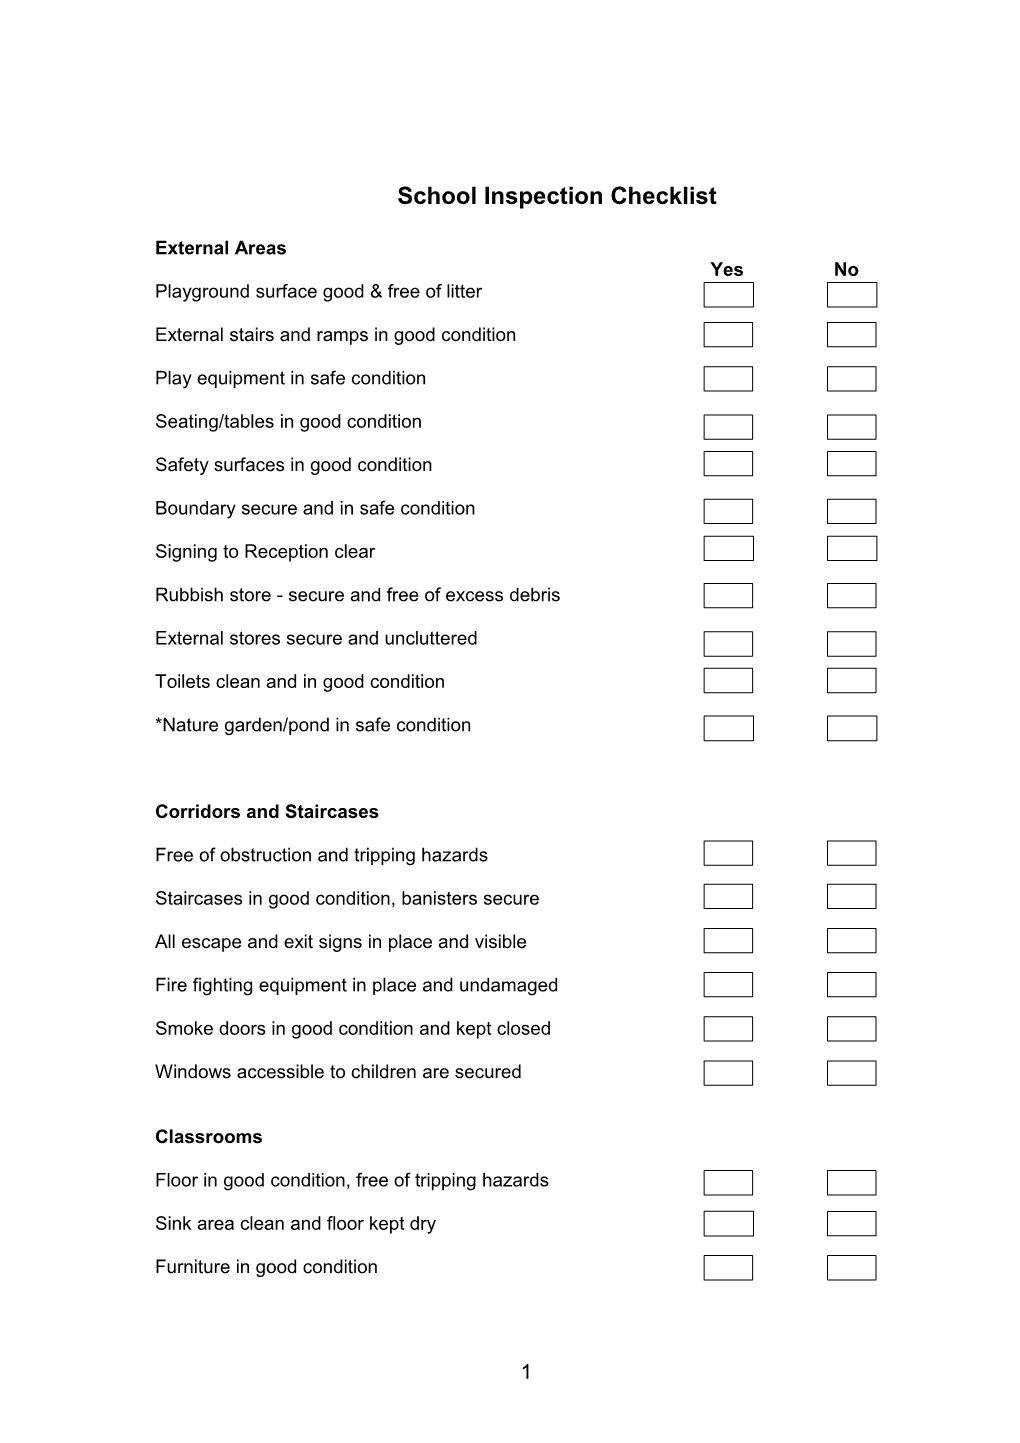 Schoolinspection Checklist